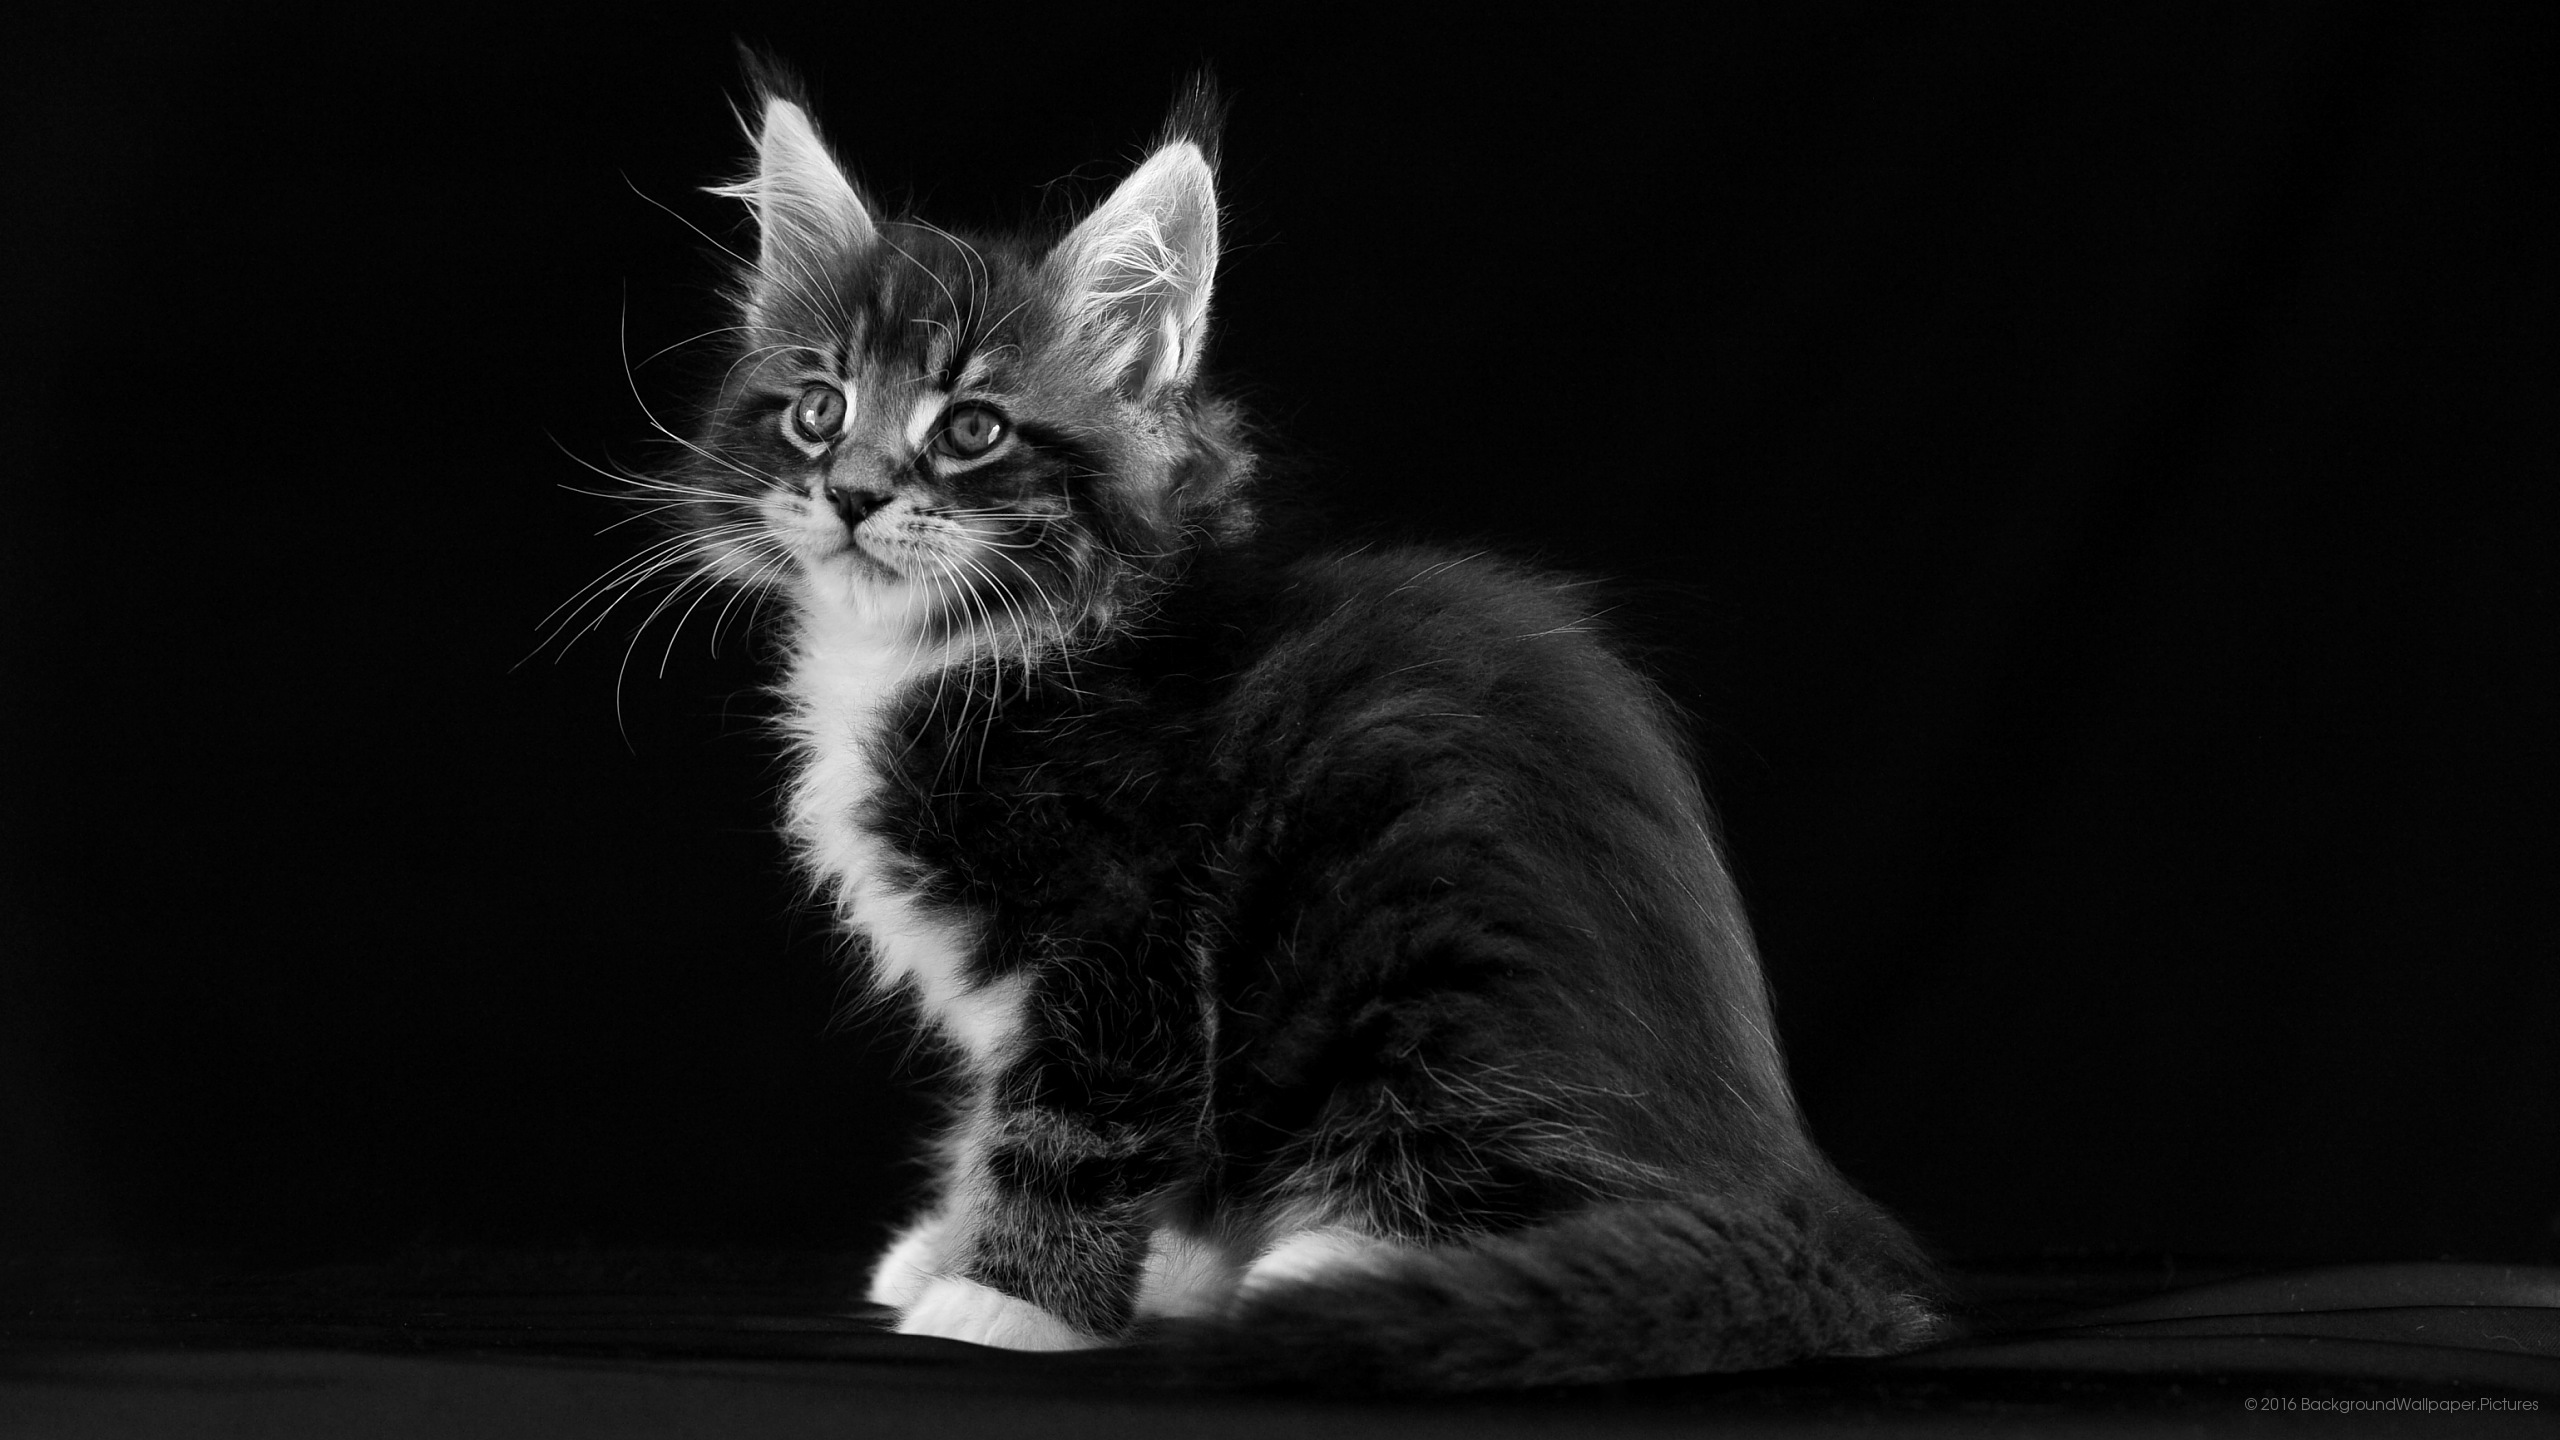 letv fond d'écran hd,chat,chats de petite à moyenne taille,moustaches,félidés,noir et blanc